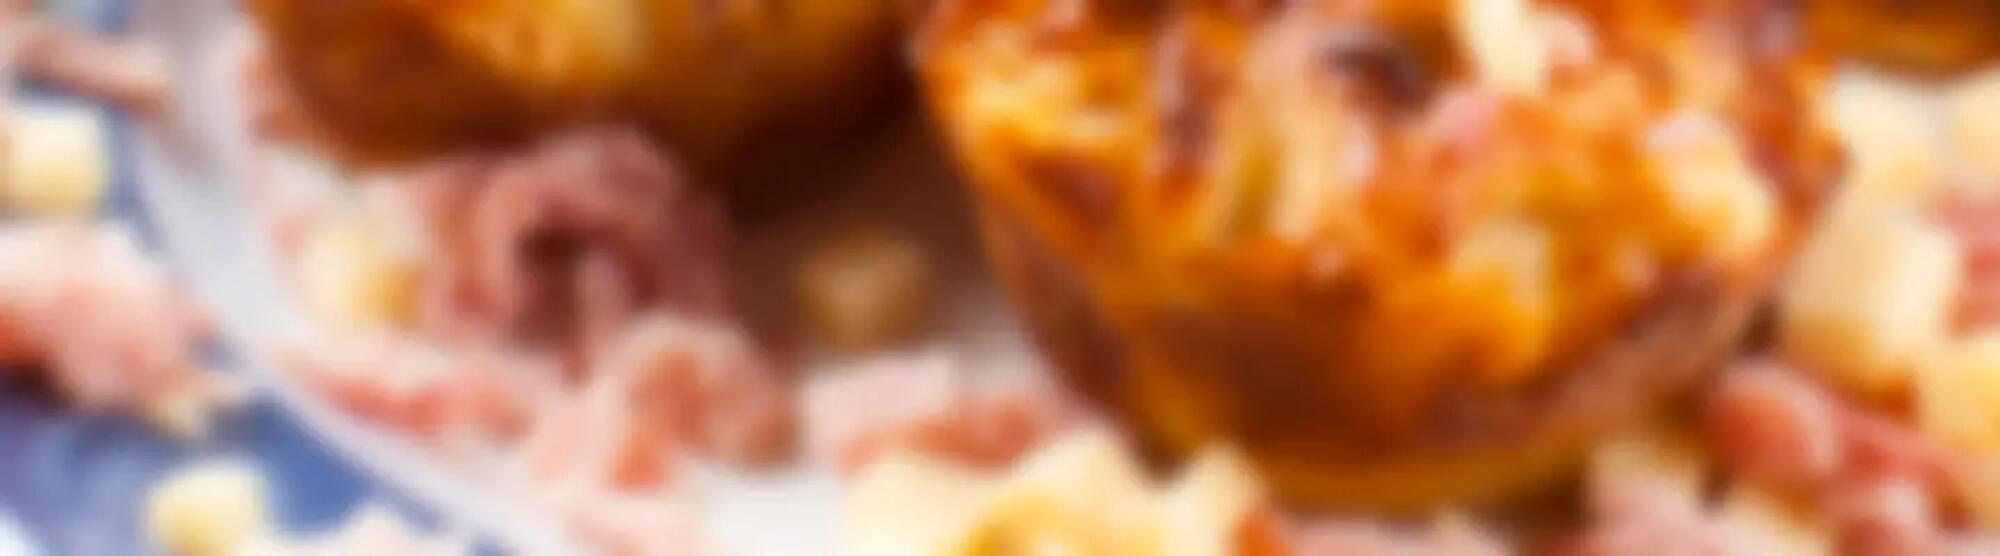 Recette : Muffins salés au jambon et fromage à raclette